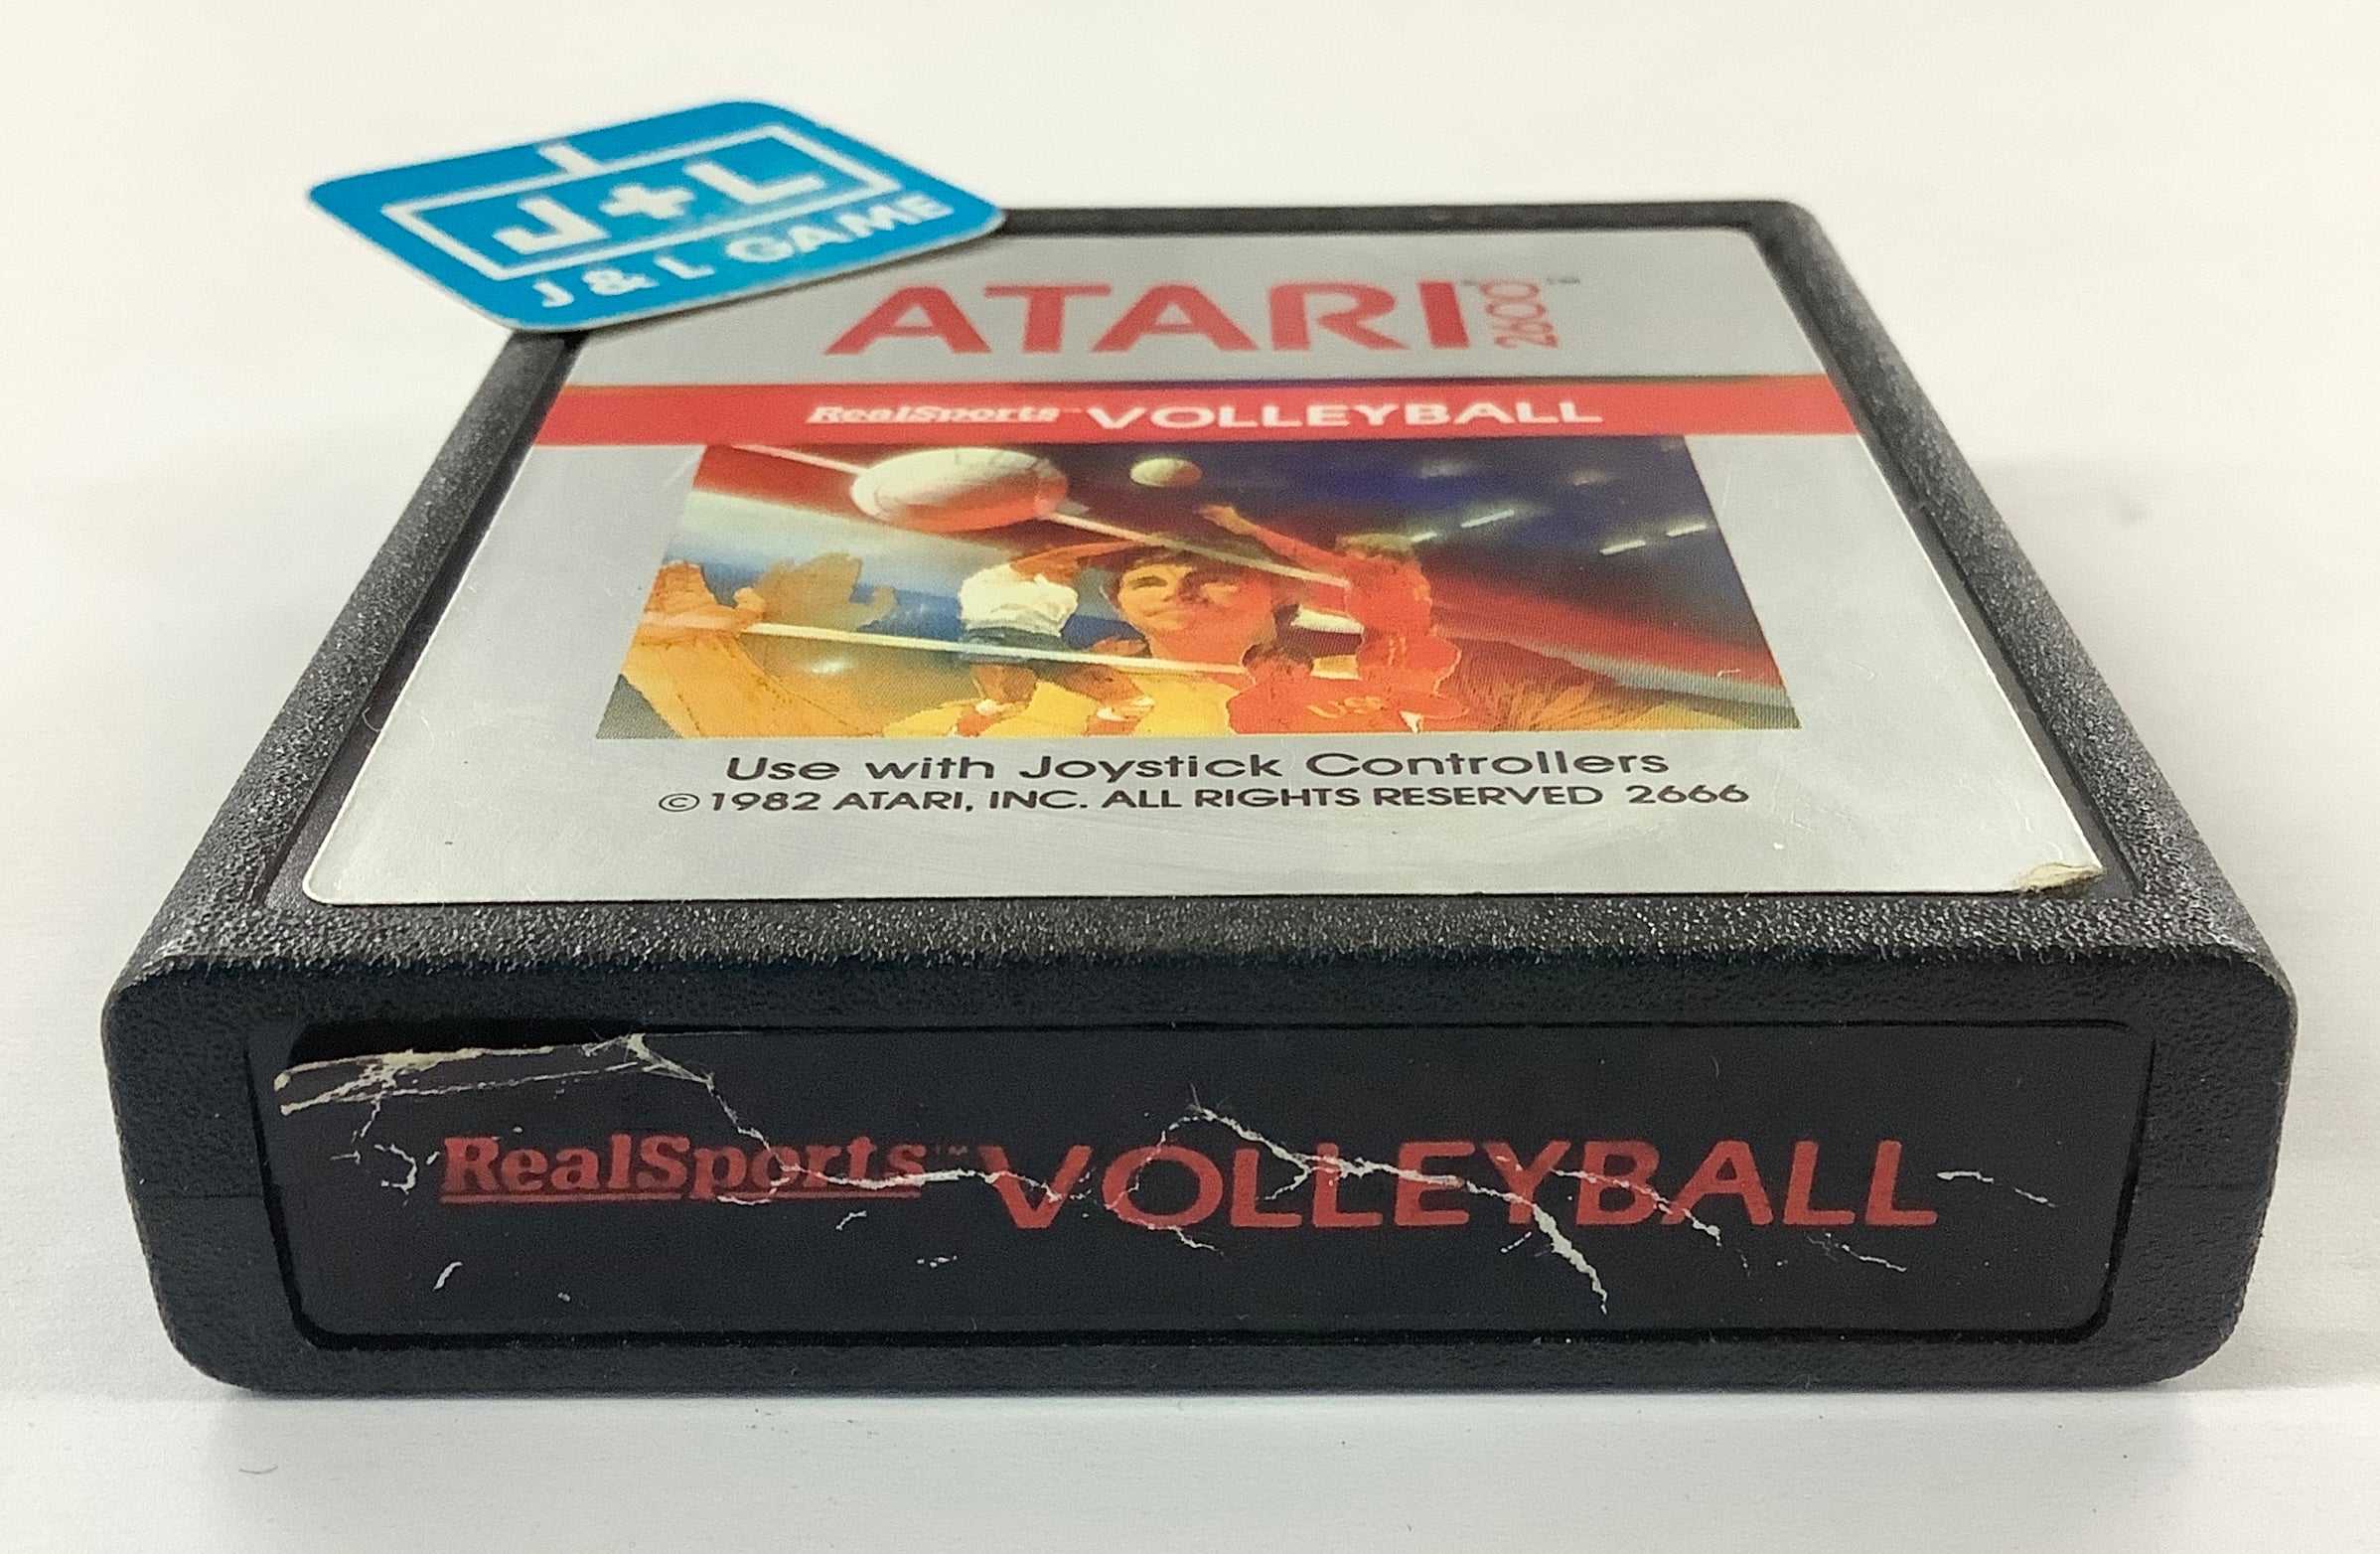 RealSports Volleyball - Atari 2600 [Pre-Owned] Video Games Atari Inc.   